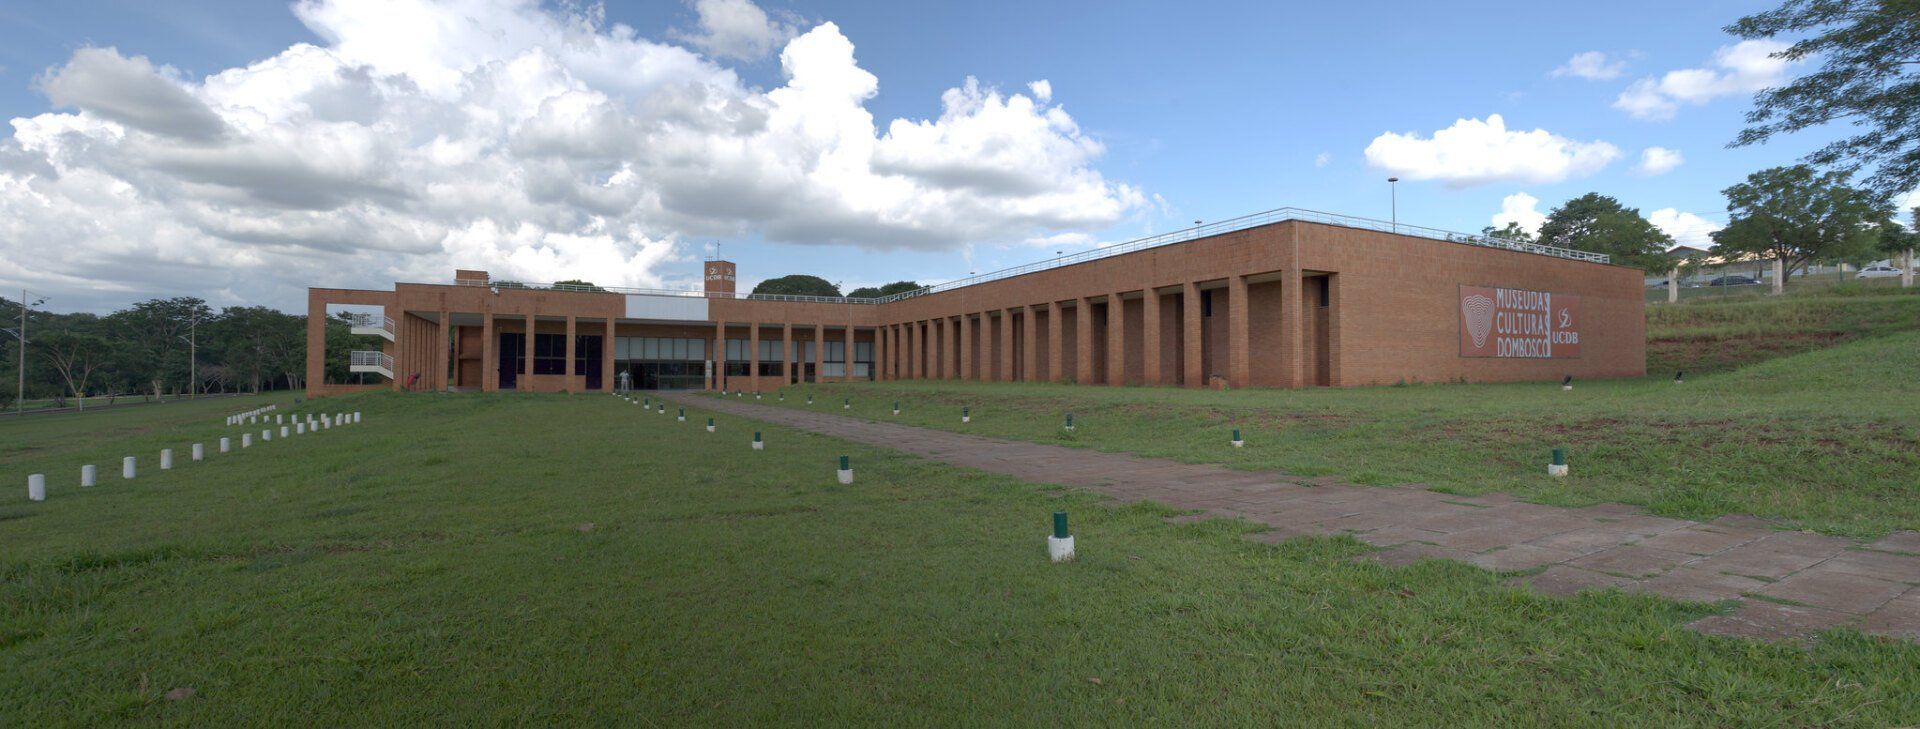 Museu das Culturas Culturas Dom Bosco